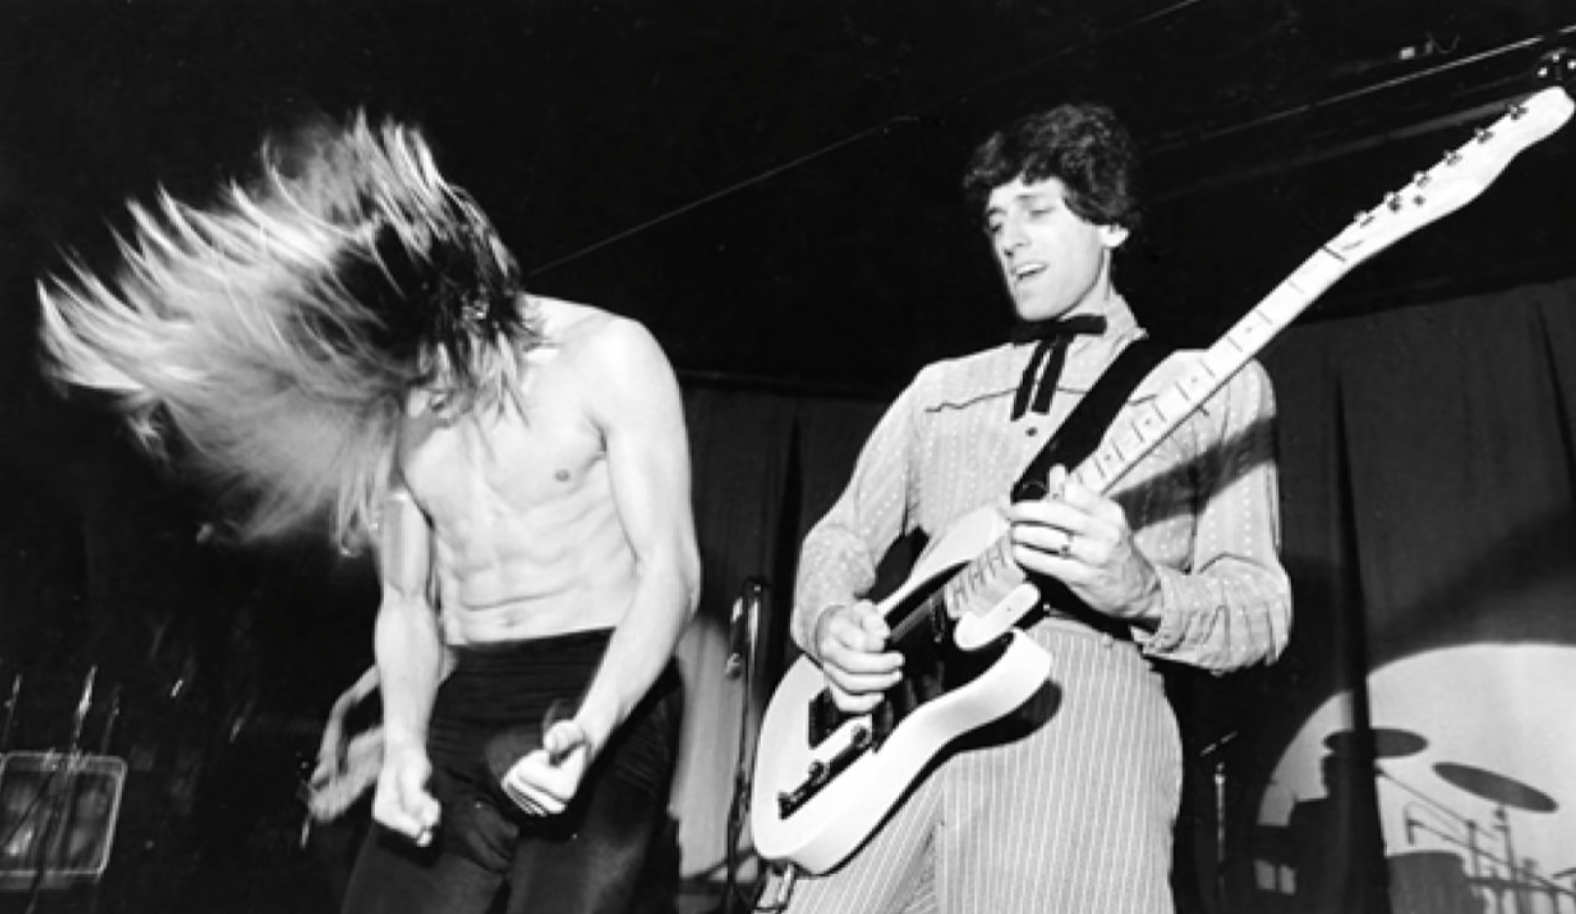 Zemřel kytarista Red Hot Chili Peppers. Jacku Shermanovi bylo 64 let